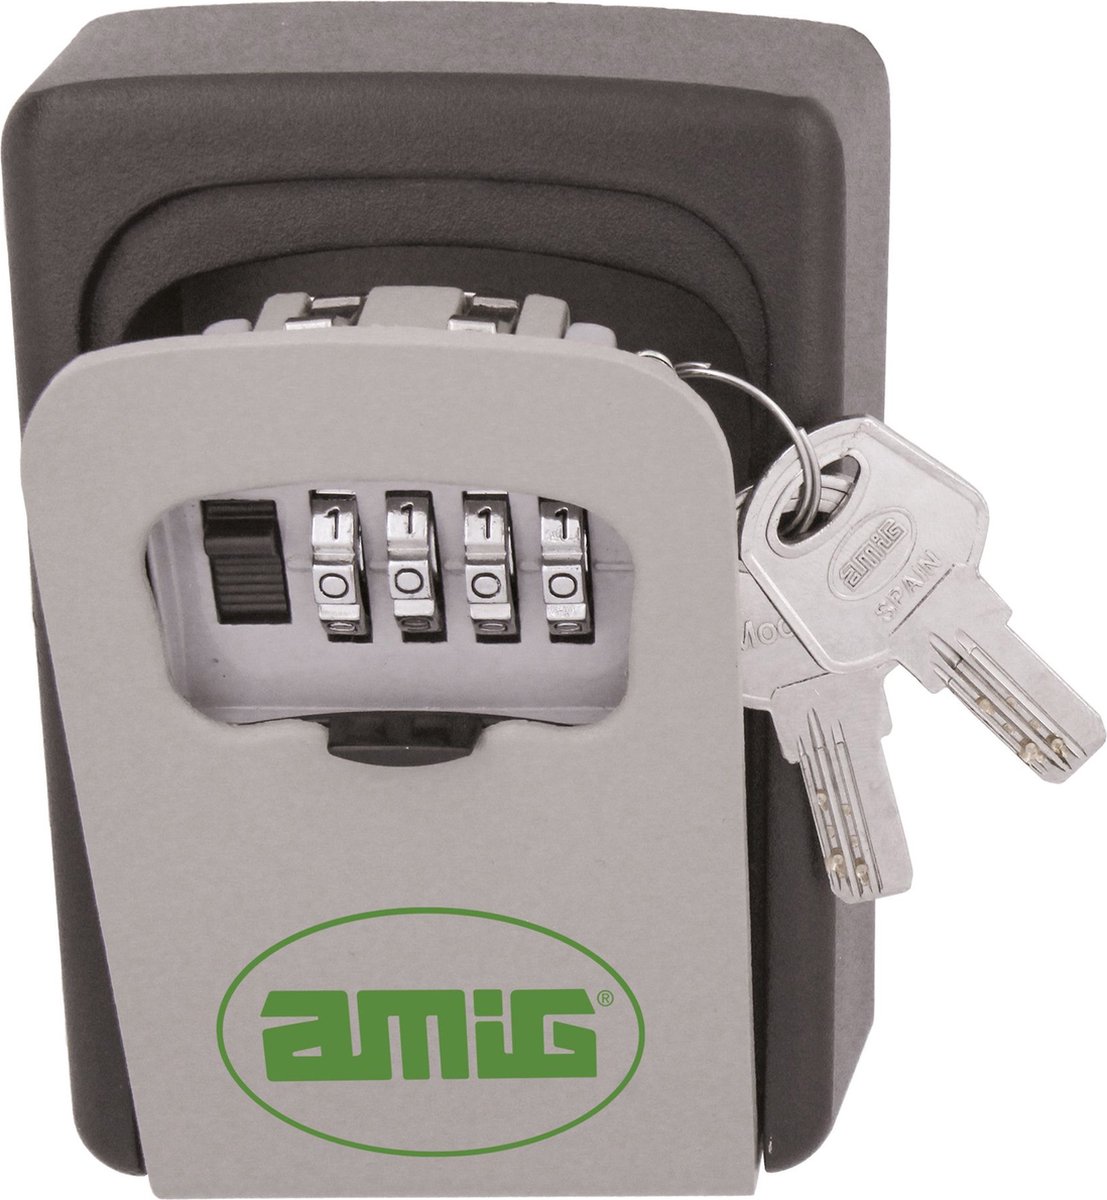 AMIG sleutelkluis met cijferslot - grijs - staal - muur montage incl. schroeven - 12 x 9 x 4 cm - 16 sleutels